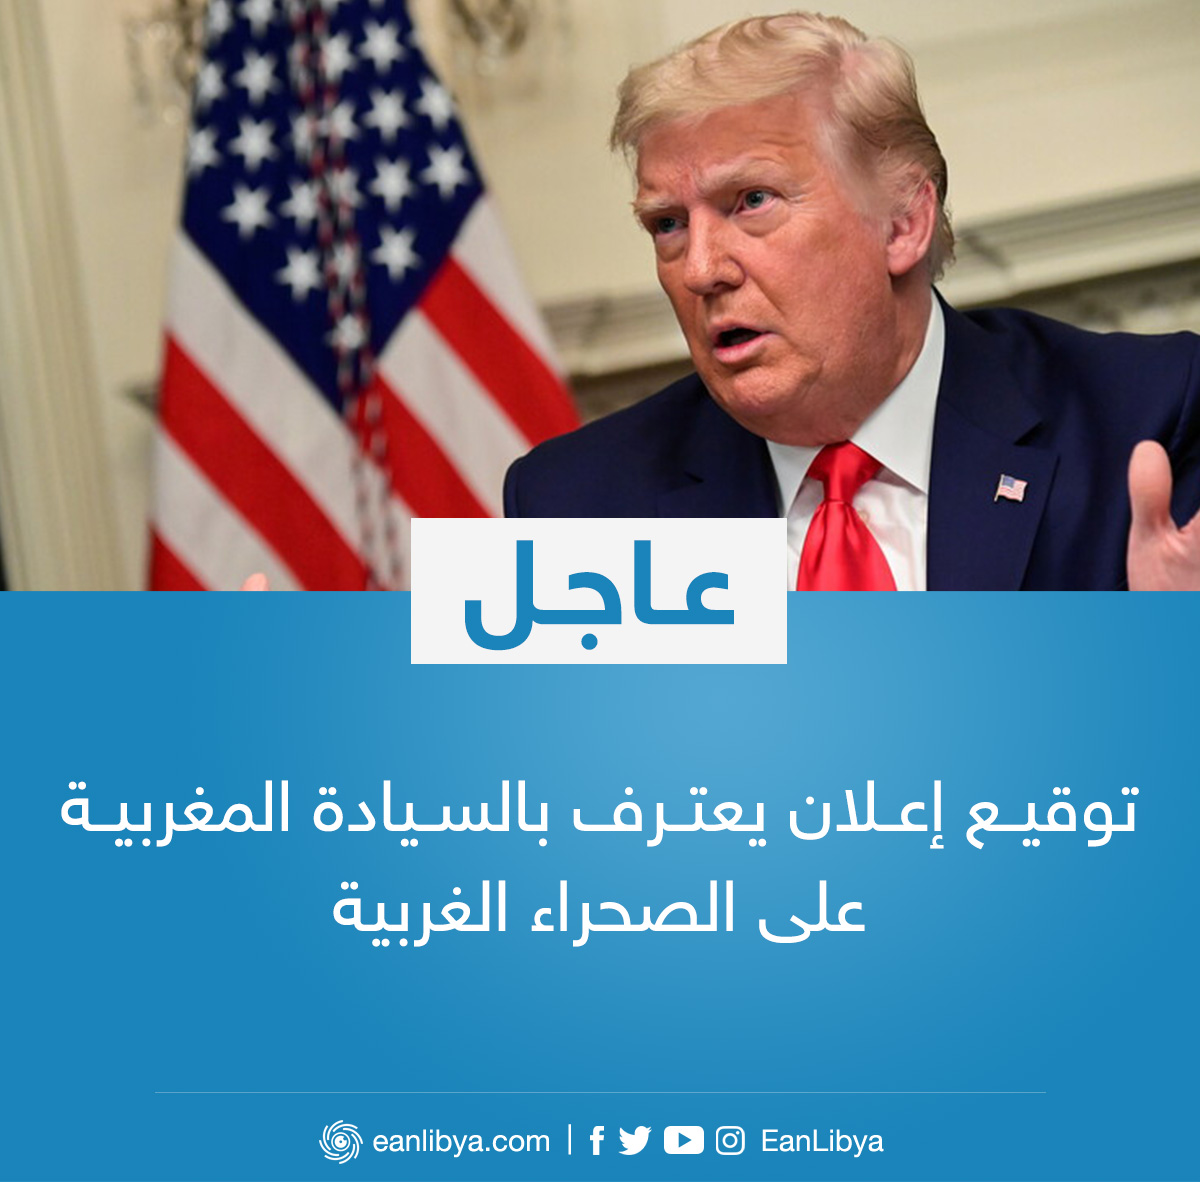 عاجل الرئيس الأمريكي دونالد ترامب يُعلن توقيعه إعلانا يعترف بالسيادة المغربية على الصحراء الغربية عين ليبيا